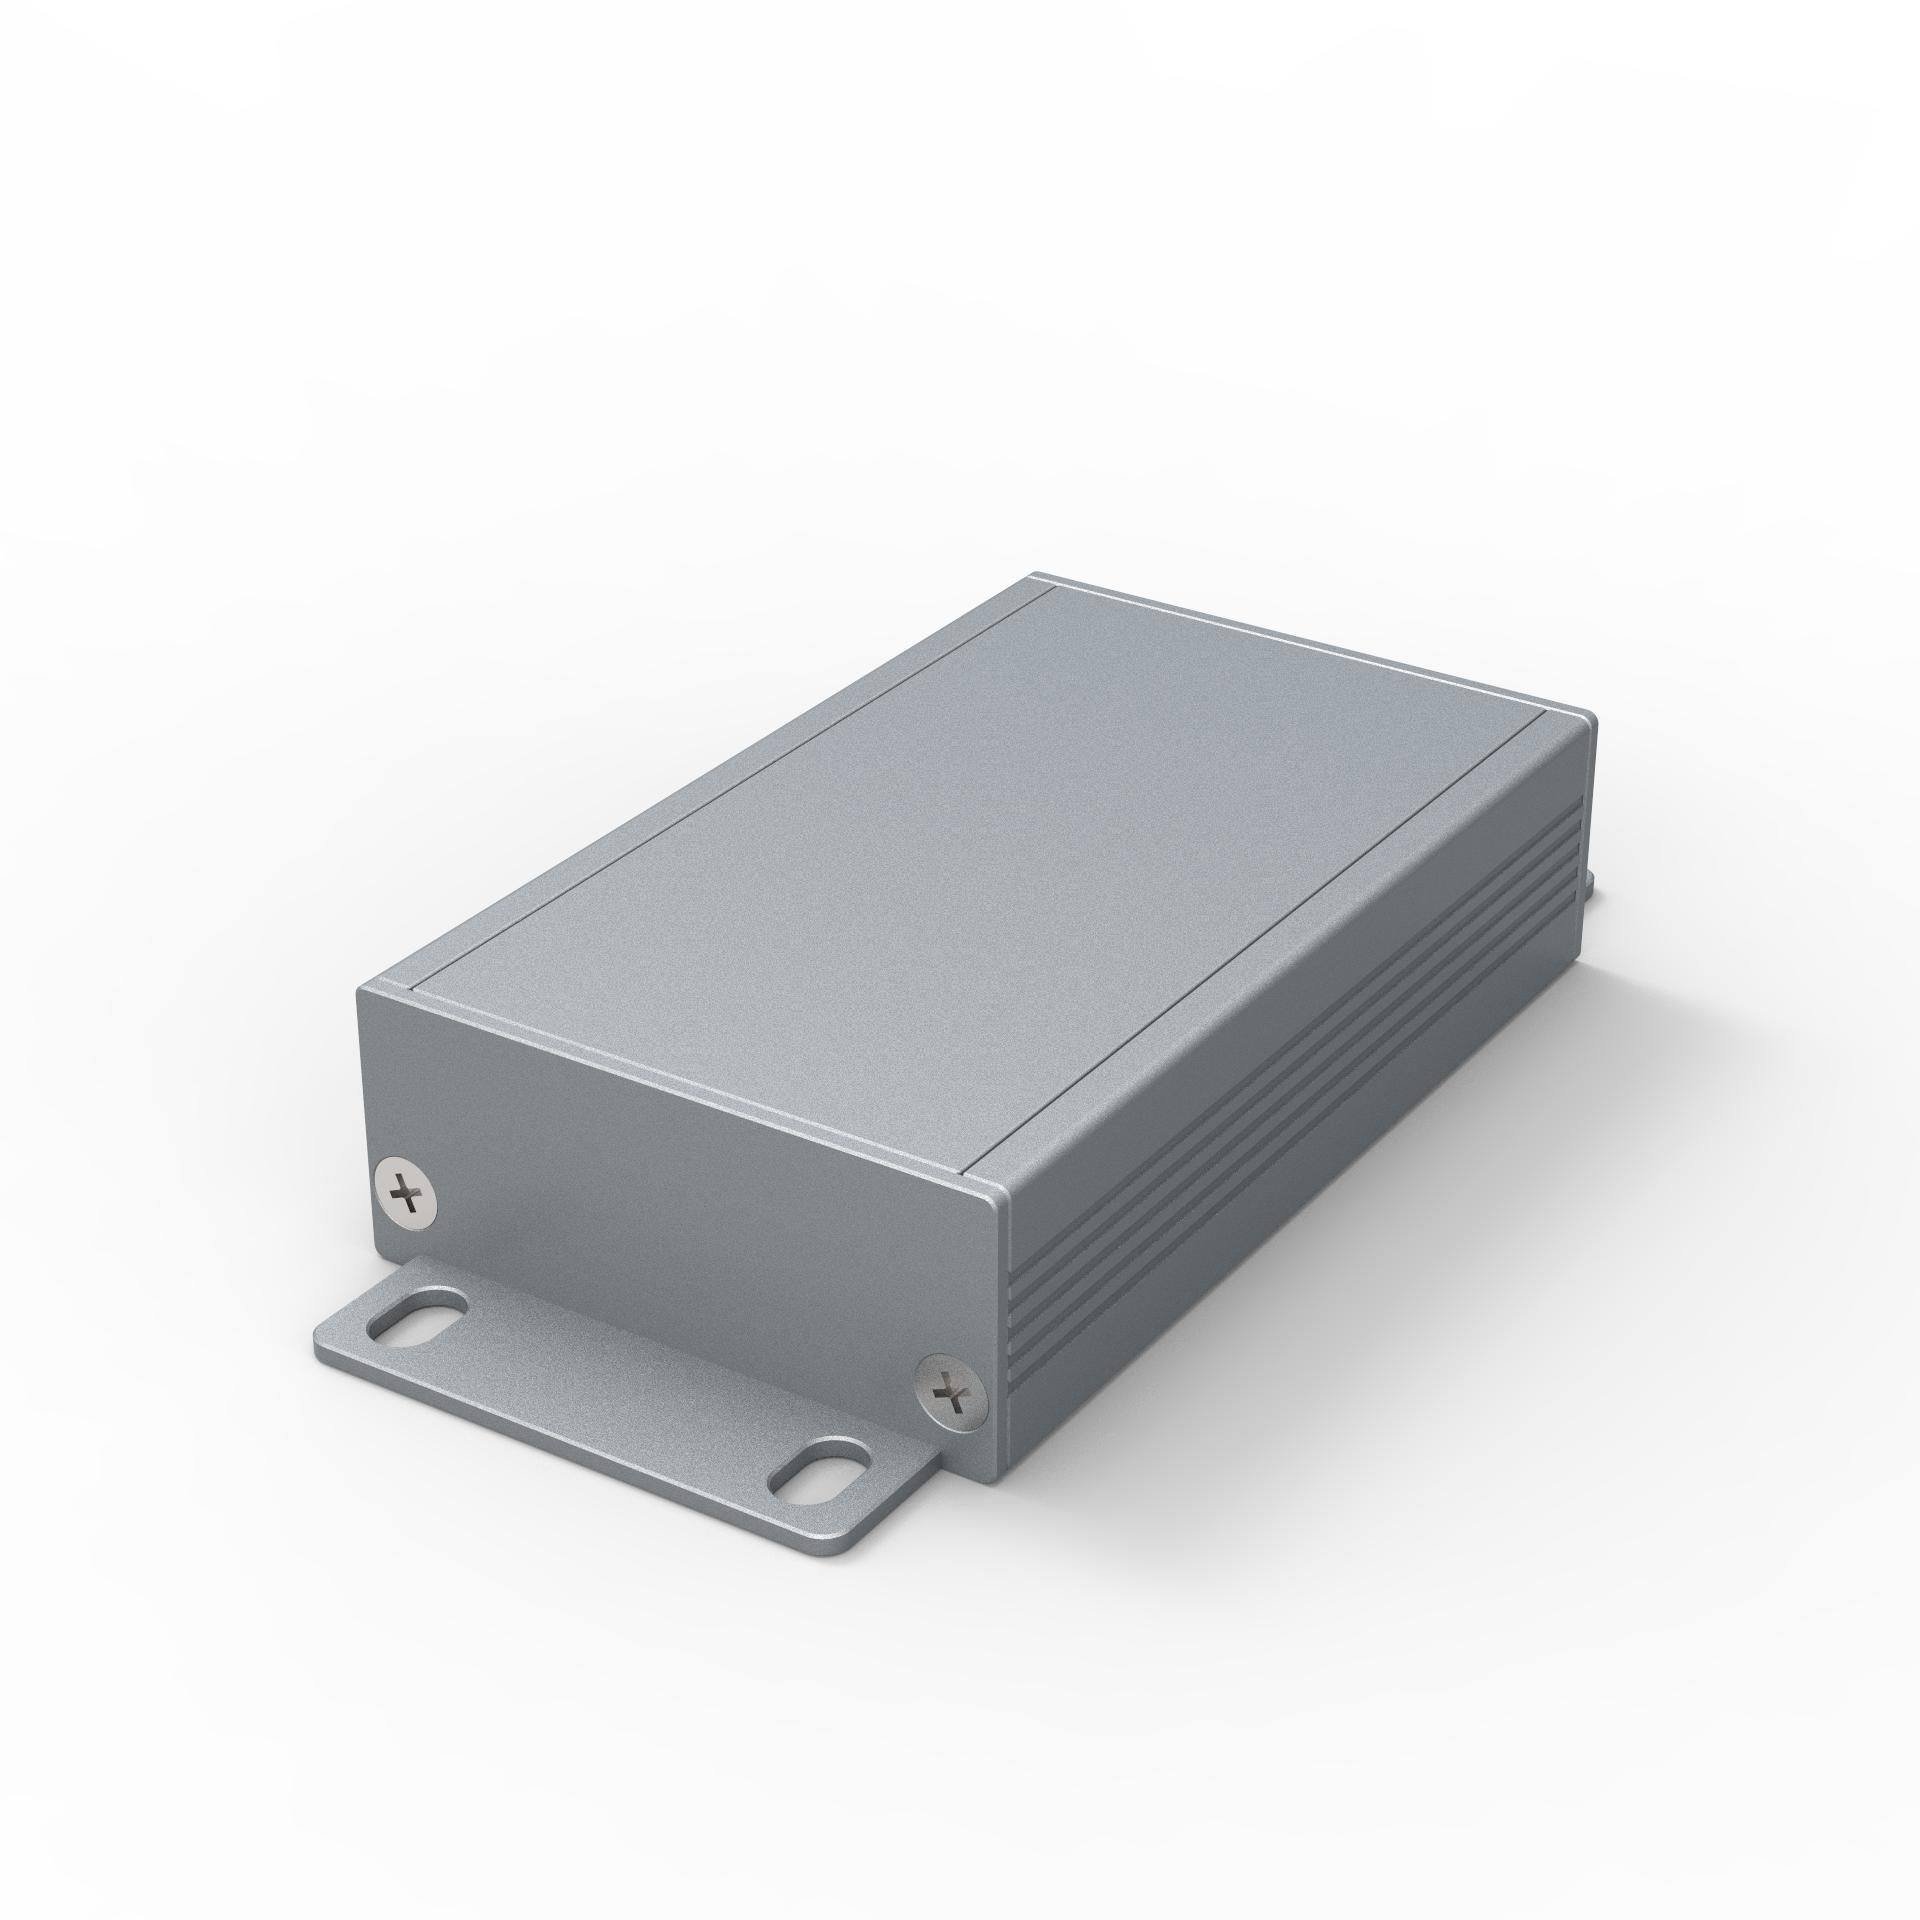 50*21-80小铝盒铝型材壳体铝外壳移动电源盒pcb盒铝合金盒子定制